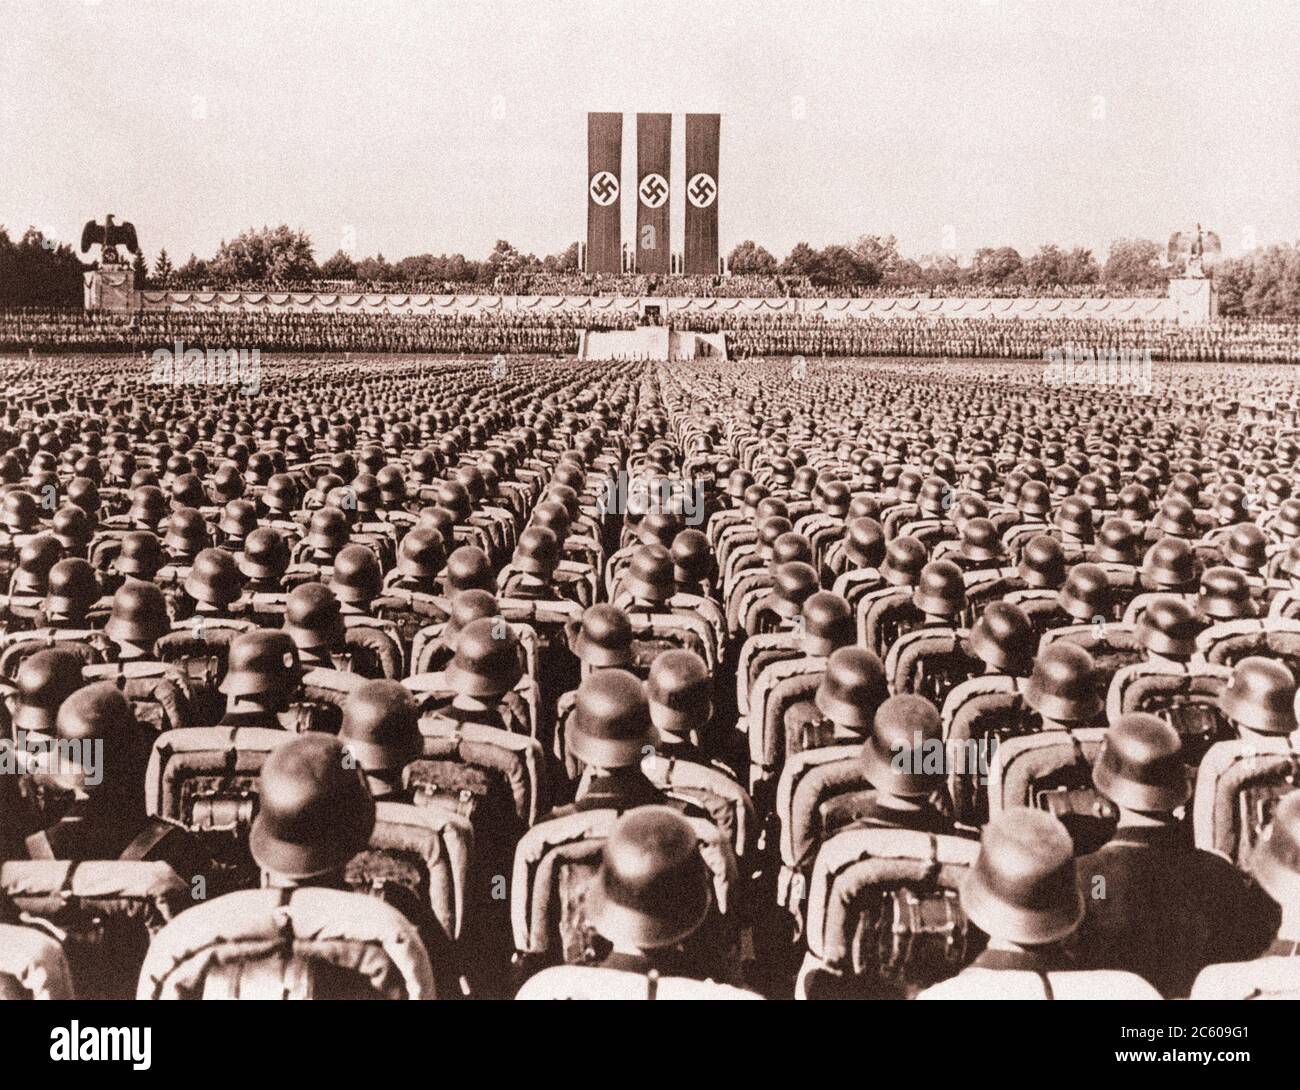 Nuremberg 1930 Waffen-SS troupes en casques polis dans précis serried Rank un stand de salut pendant un rallye allemand nazi Banque D'Images